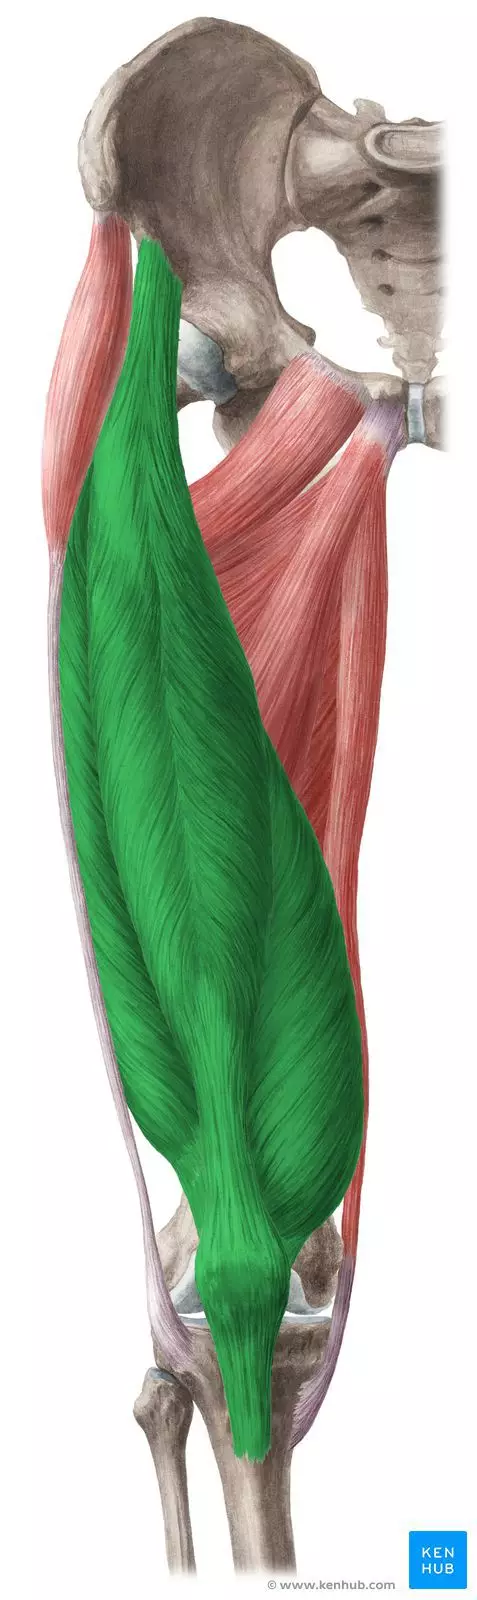 Partie mięśni nóg - mięsień czworogłowy uda